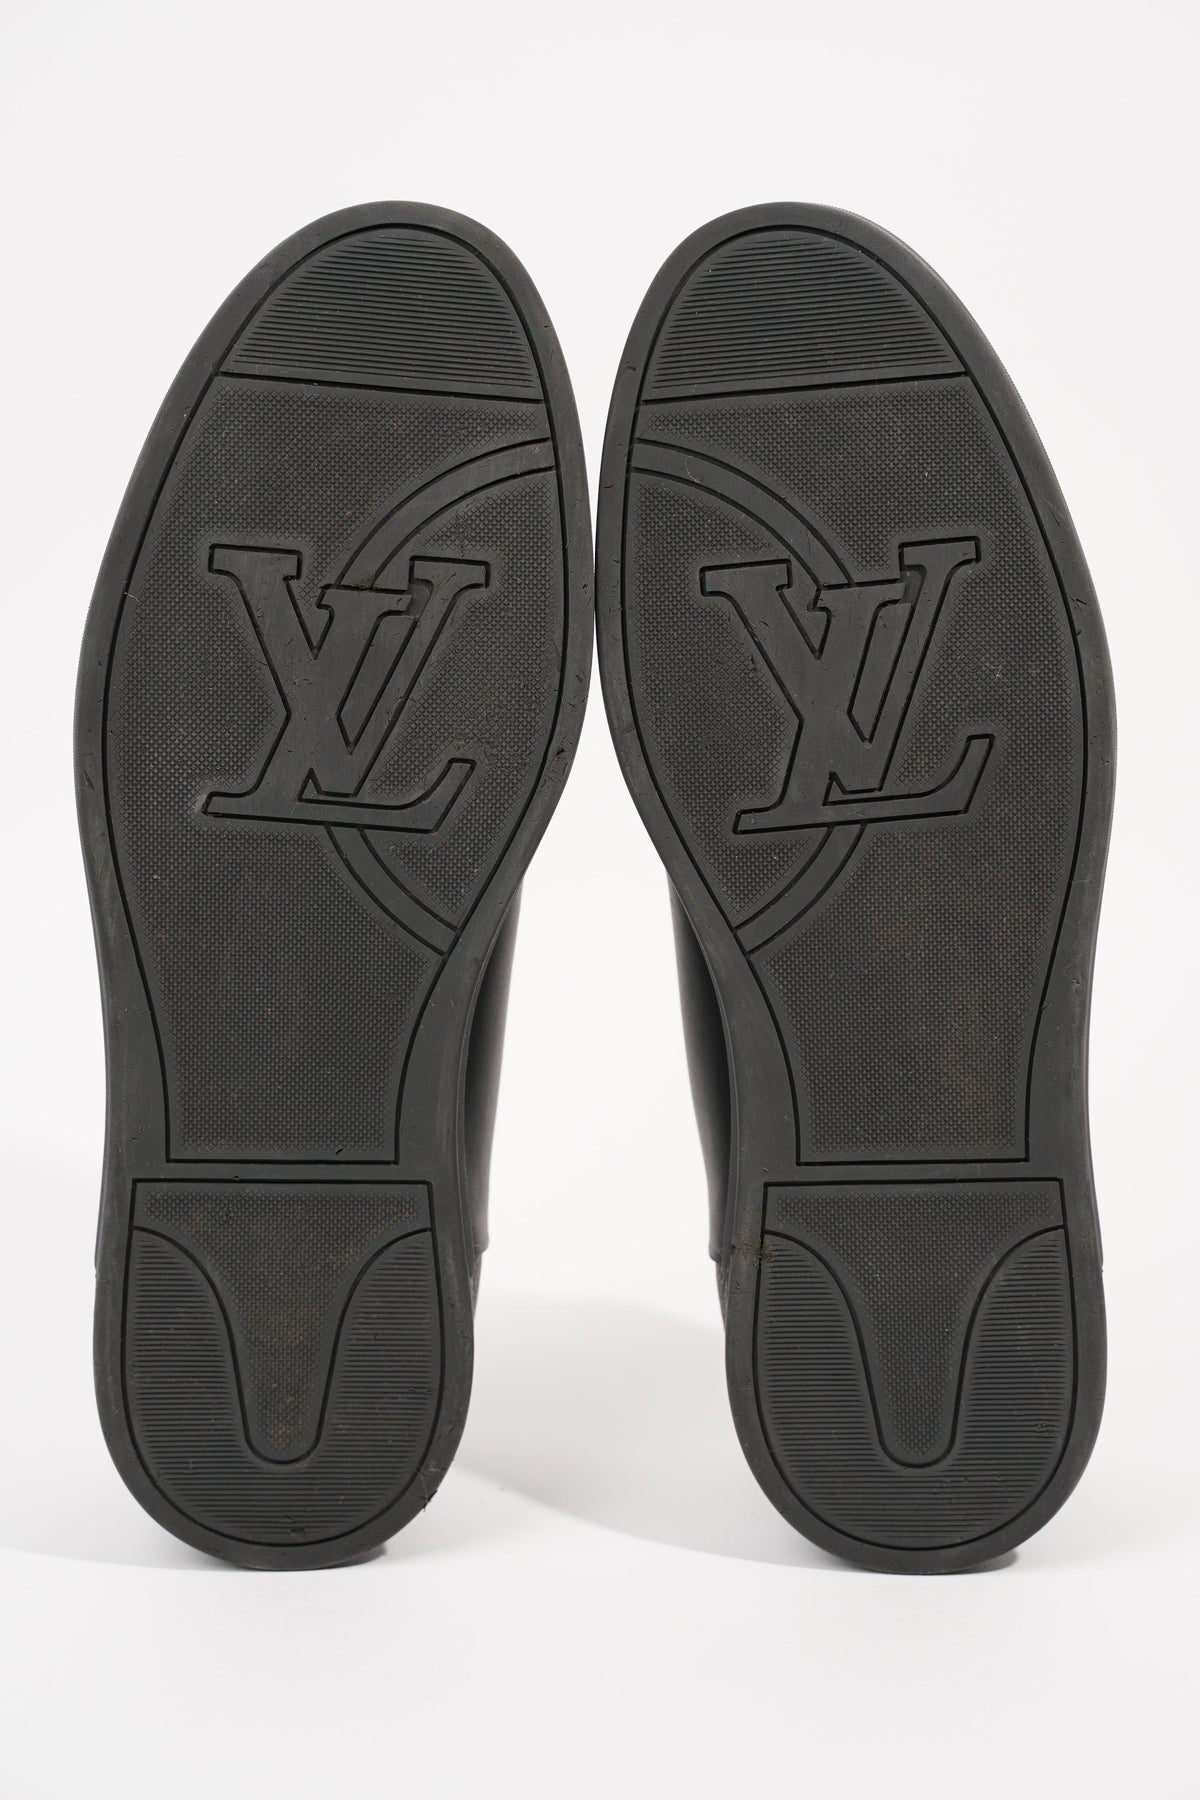 Louis Vuitton Shoes - UK-12/US-13 (EU 46 ) Leather Damier